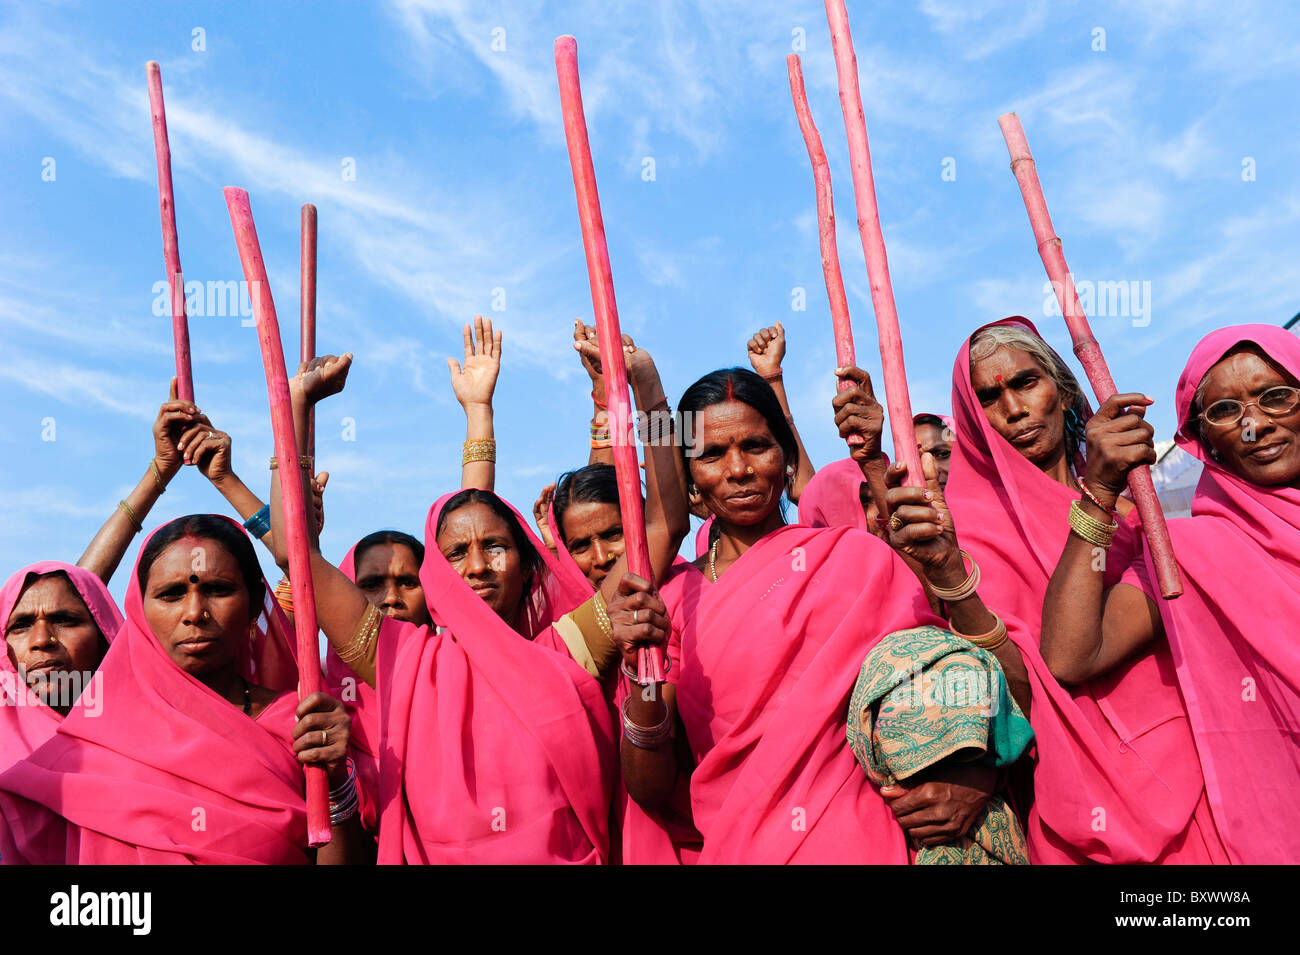 Ciudad de la India Banda , rally de movimiento de mujeres Gulabi gang con su líder Sampat Pal Devi, la mujer en rosa sari, luchar contra la violencia contra las mujeres Foto de stock